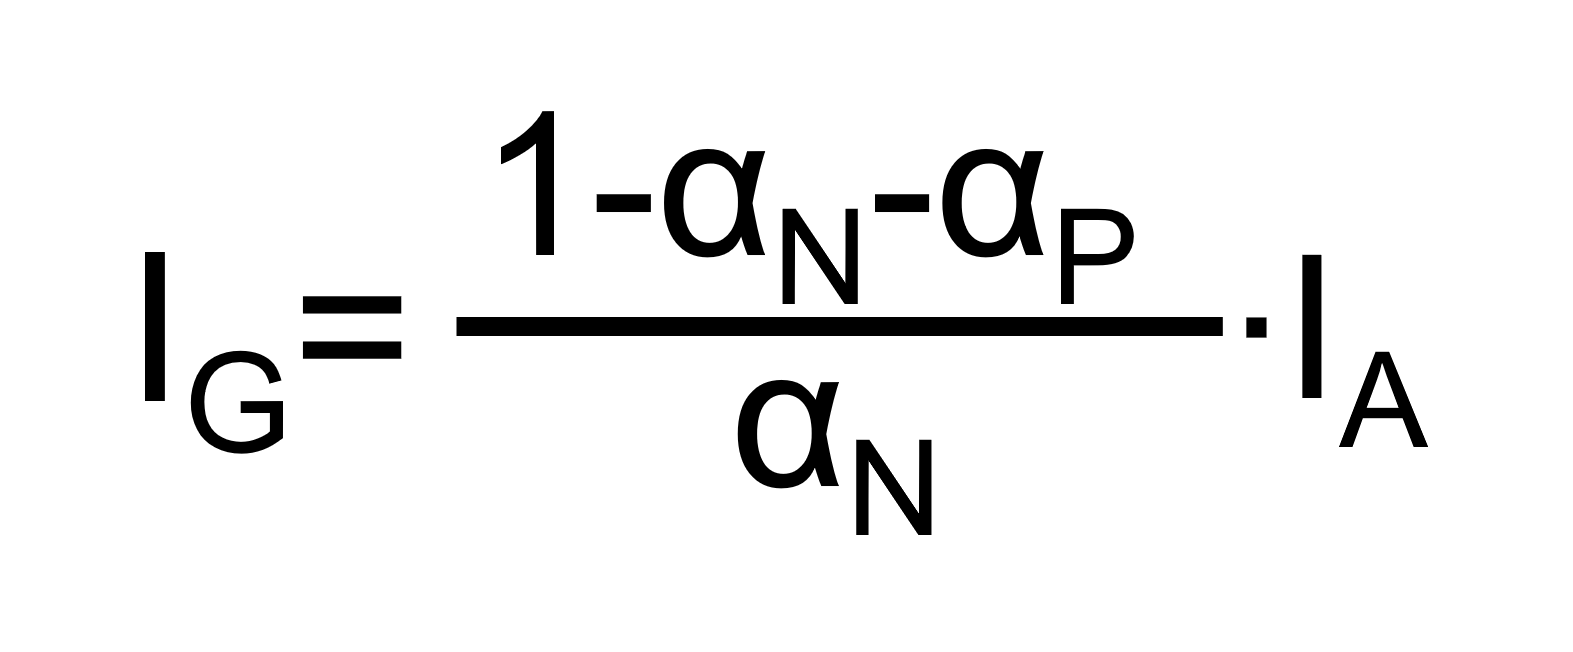 Das Bild zeigt die Formel zur Berechnung des Gatestrom anhand des Ersatzschaltbild